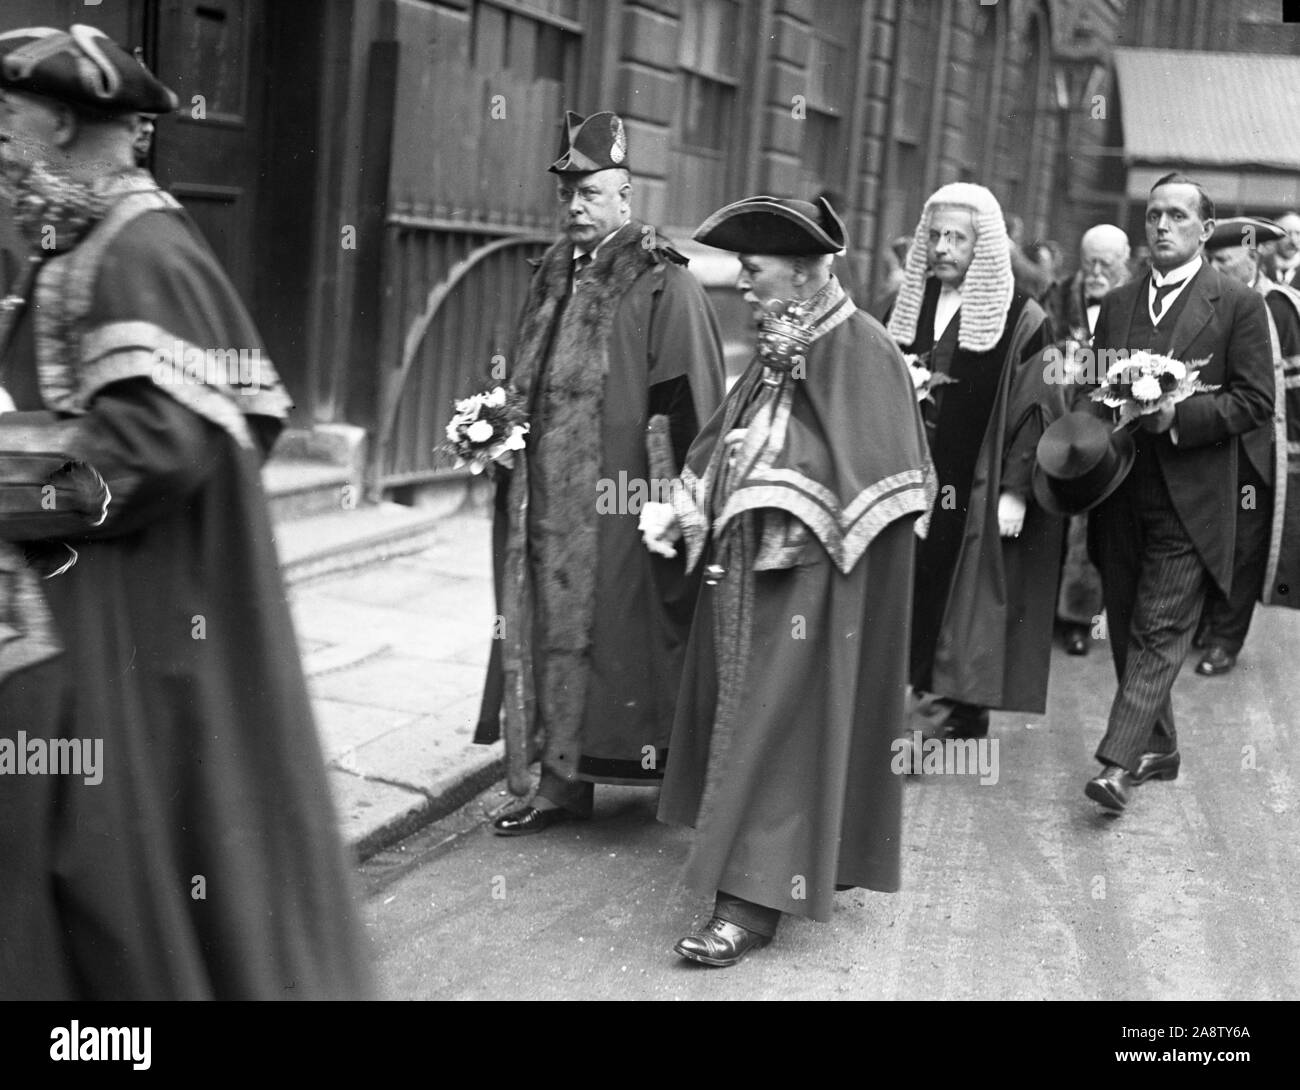 L'elezione di assessore Sir Louis Newton come sindaco di Londra è stata preceduta da un servizio a St Lawrence Jewry. Mostra fotografica di assessore Sir Louis Newton (l) in processione dalla Guildhall alla Chiesa. Foto Stock